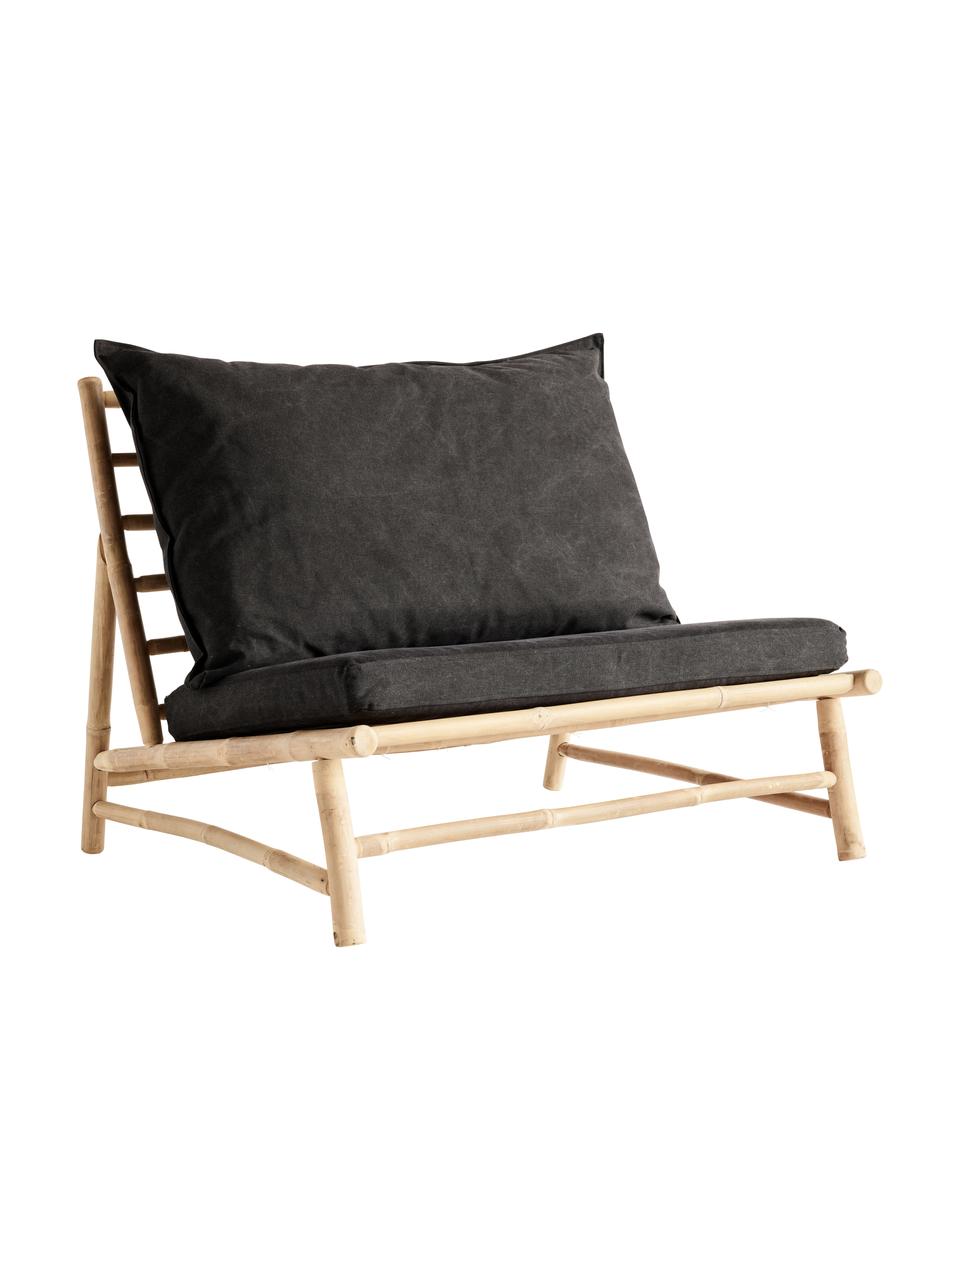 Fotel wypoczynkowy XL z drewna bambusowego Bamslow, Stelaż: drewno bambusowe, Tapicerka: 100% bawełna, Ciemny szary, brązowy, S 100 x G 87 cm